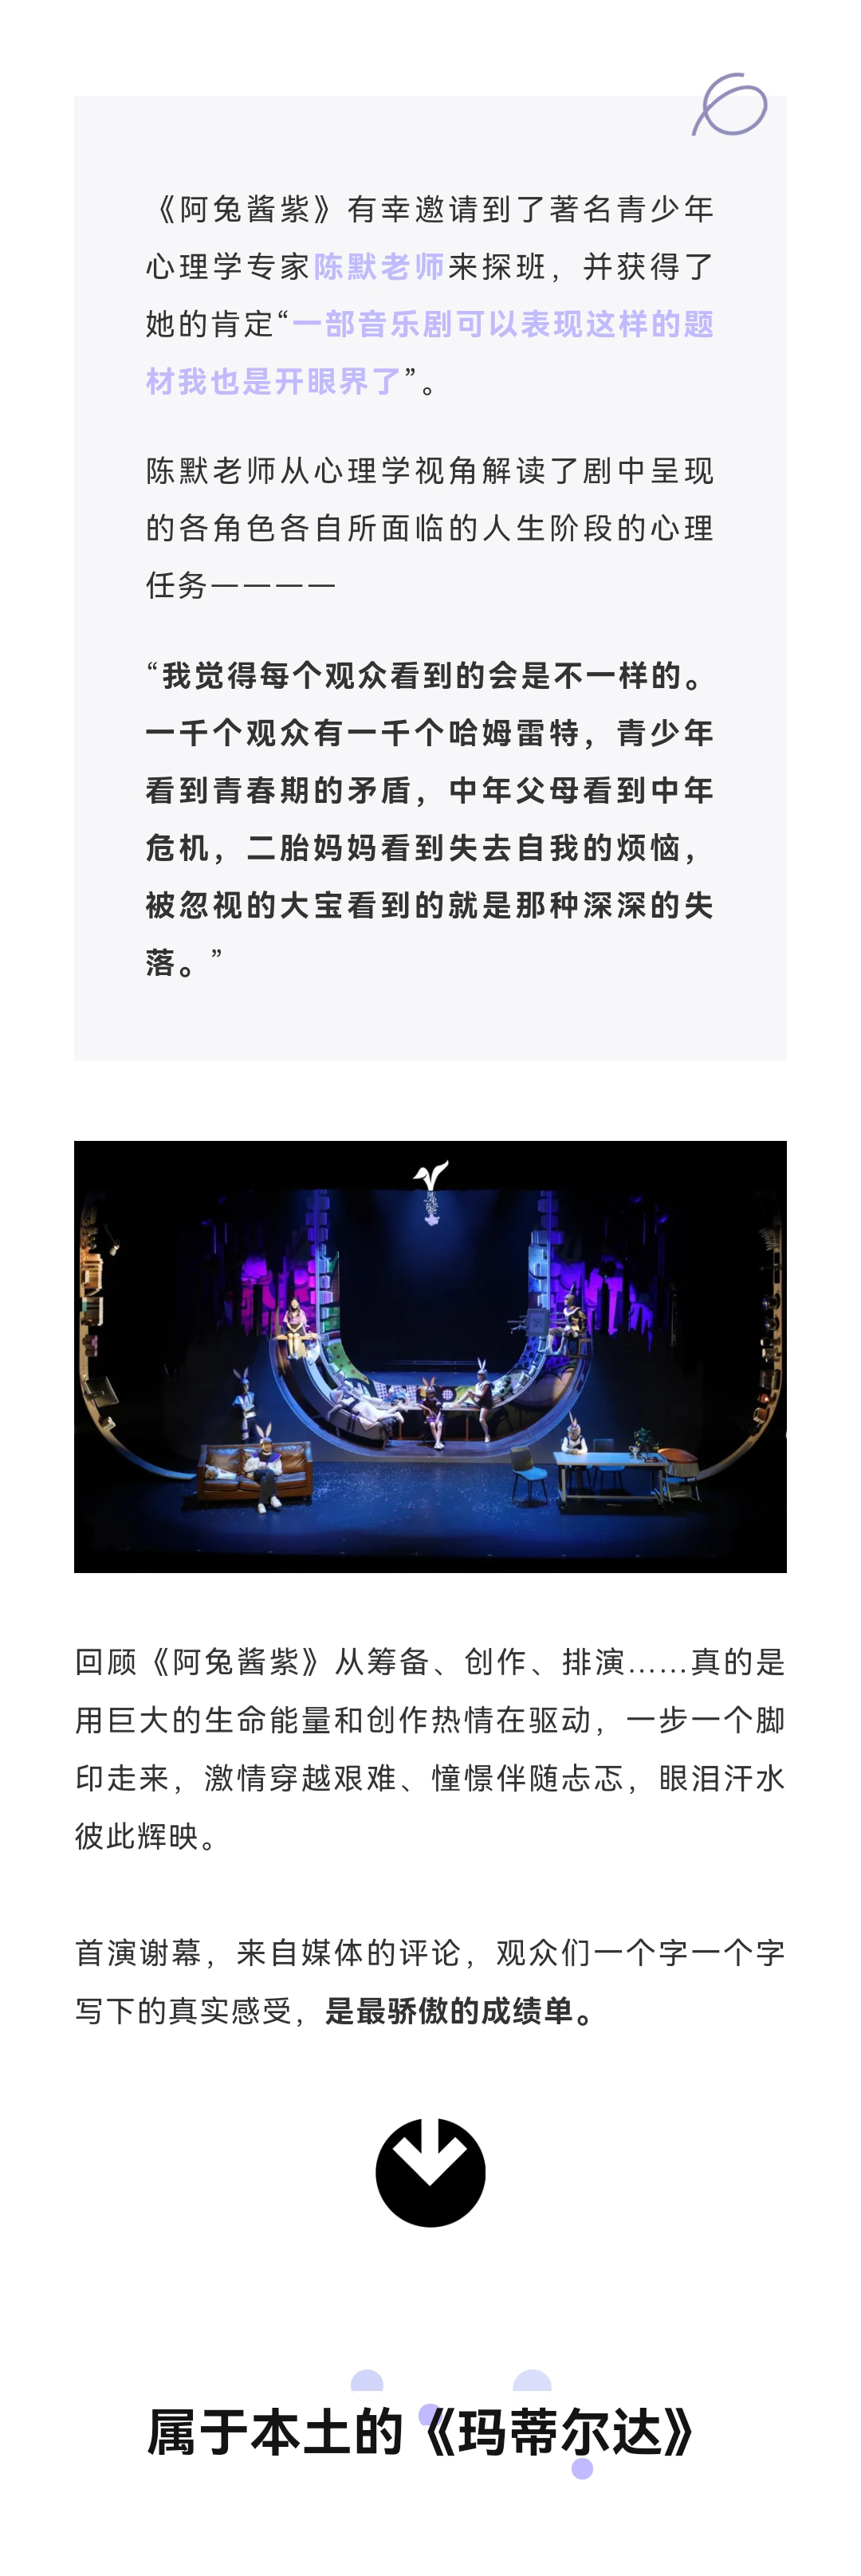 2021尔多原创音乐剧《阿兔酱紫》-上海站